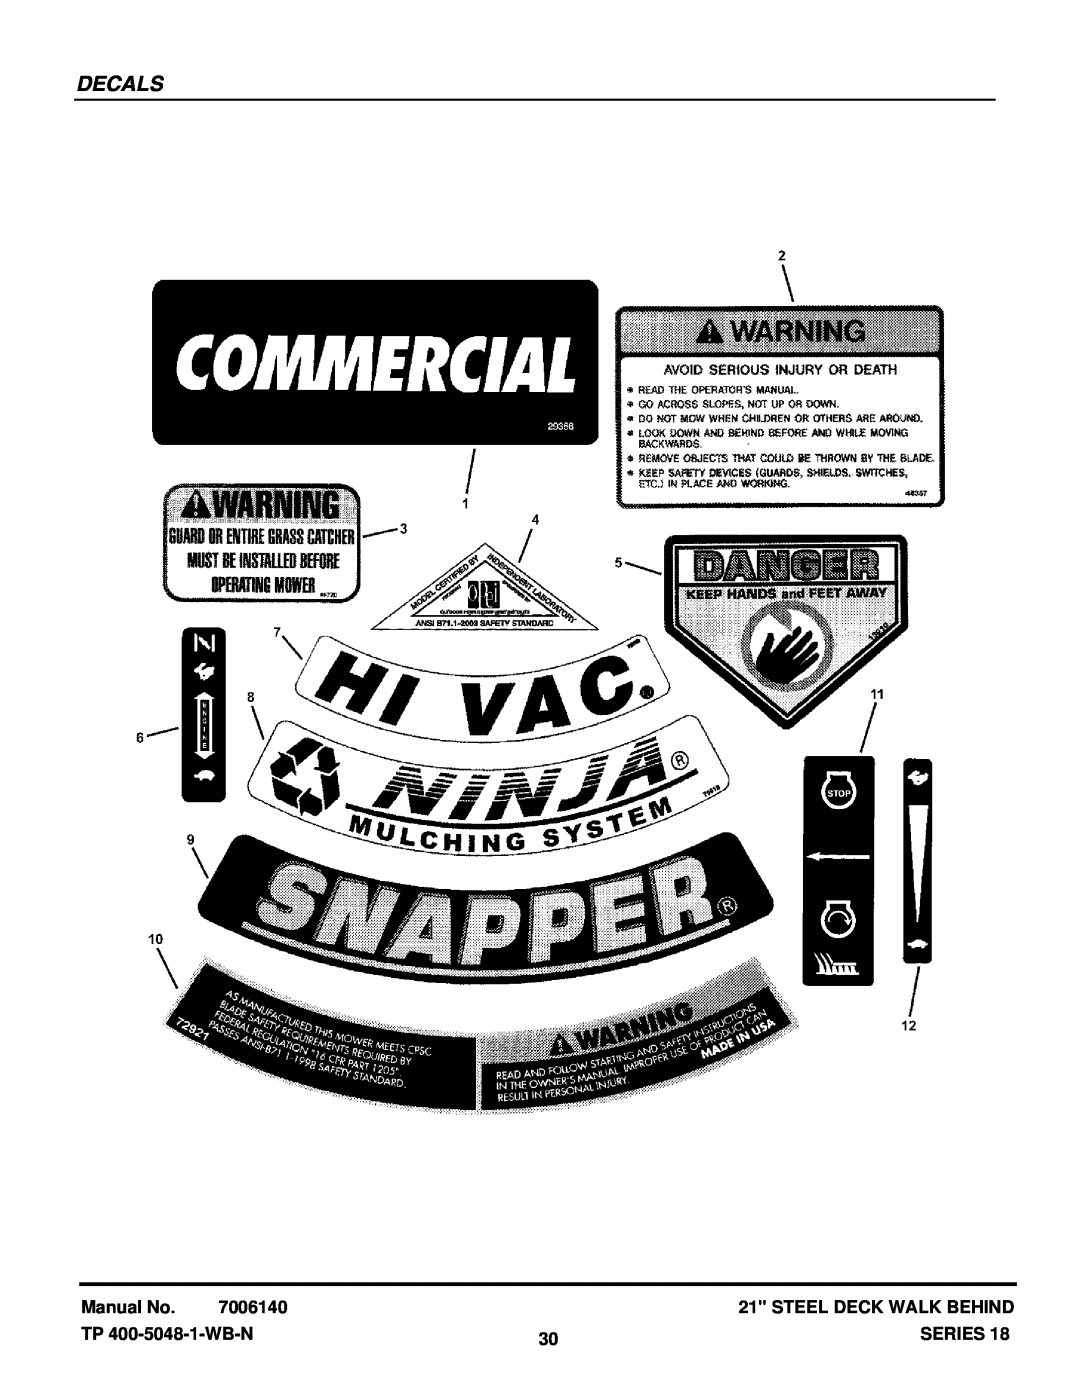 Snapper CRP216018KWV, CP215518HV manual Decals, Manual No, 7006140, Steel Deck Walk Behind, TP 400-5048-1-WB-N, Series 